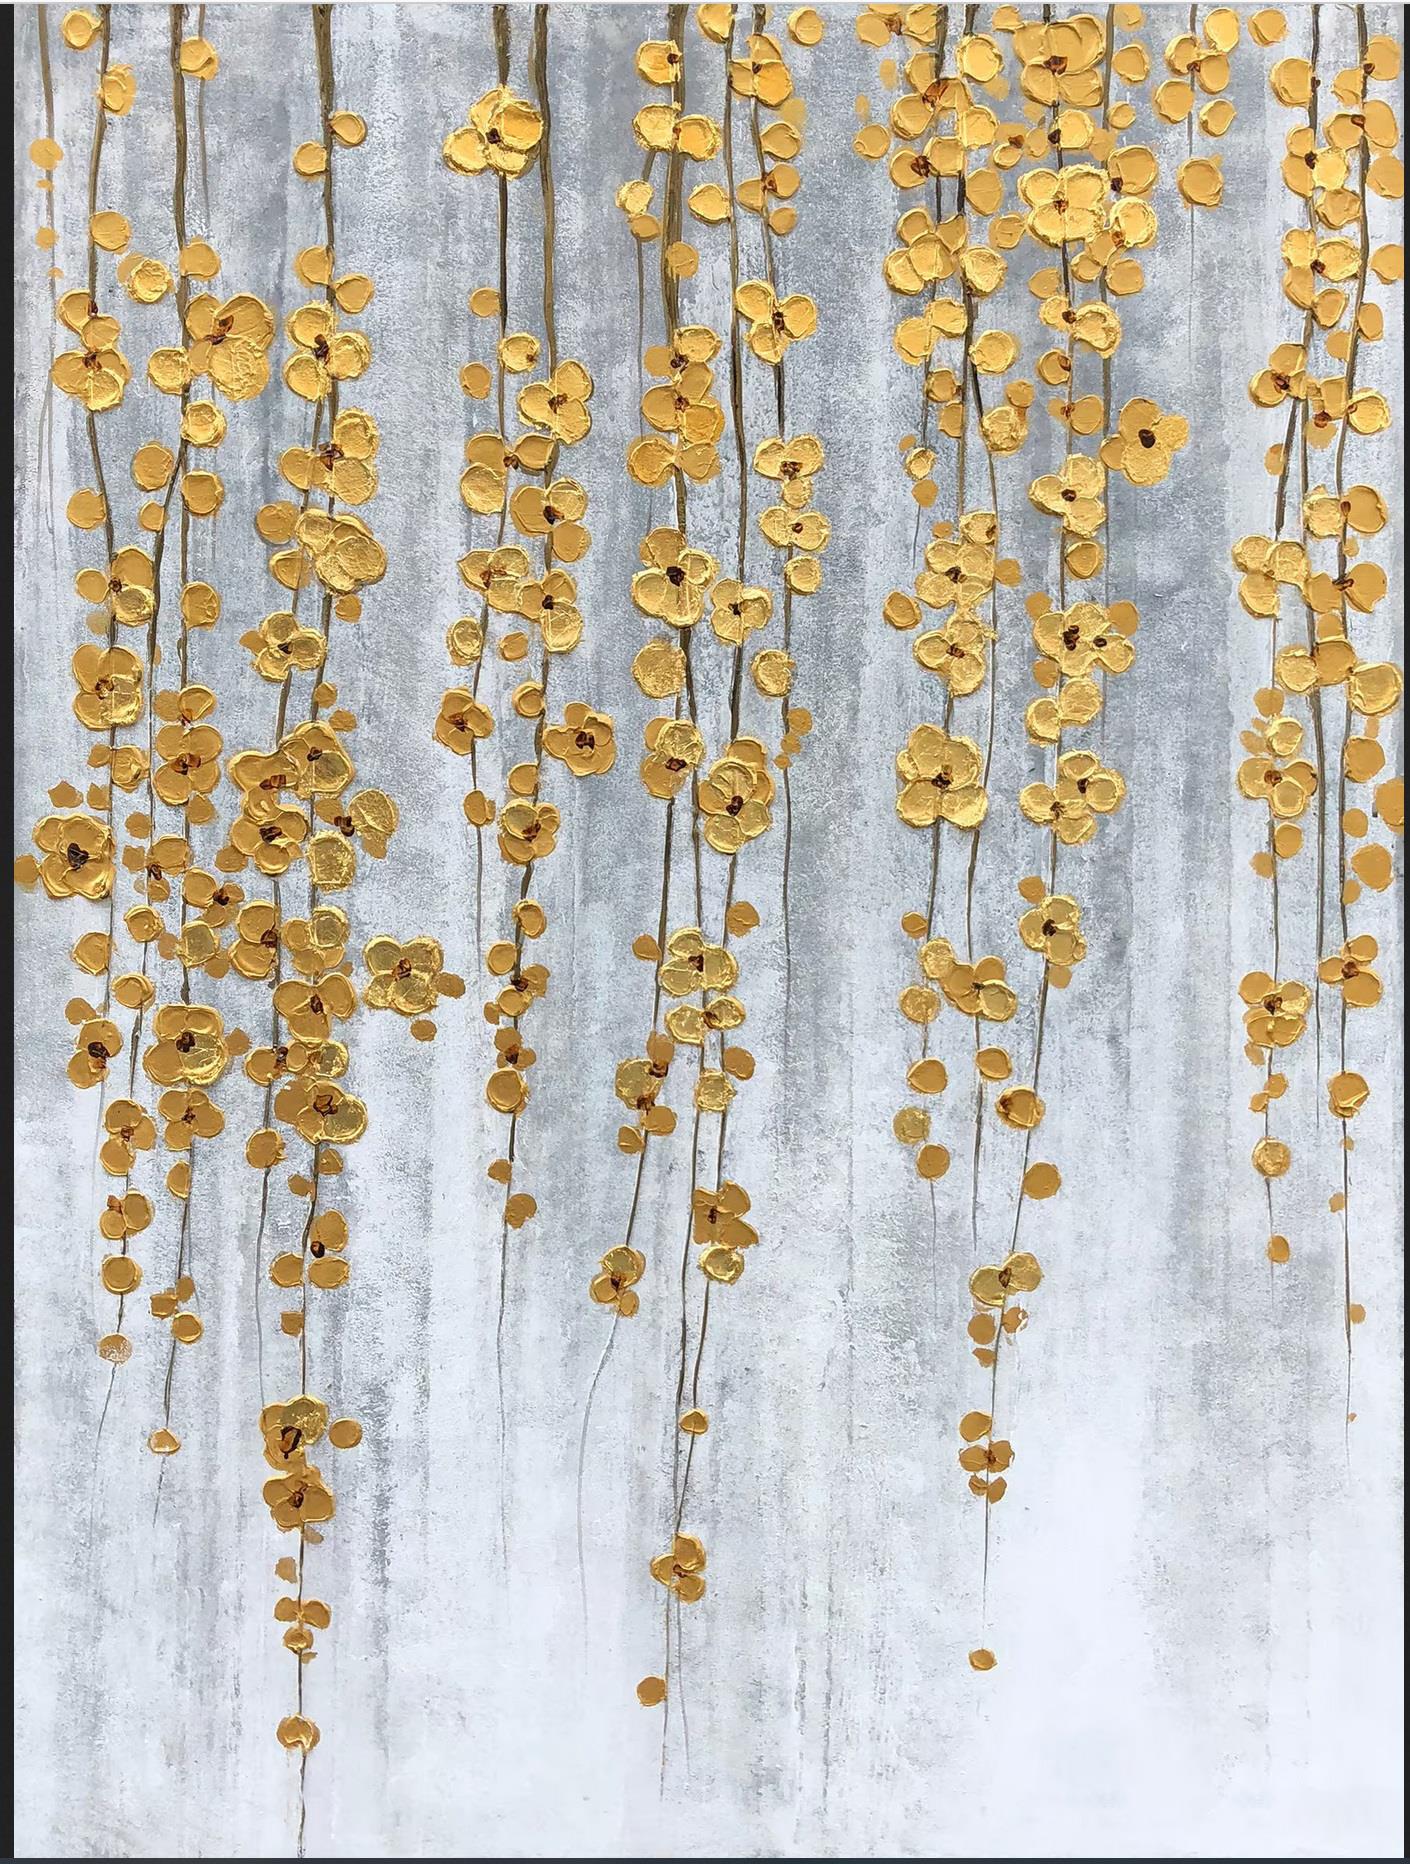 Natürlich herabhängende goldene Blumen von Palettenmesser Wandkunst Minimalismusus Textur Ölgemälde